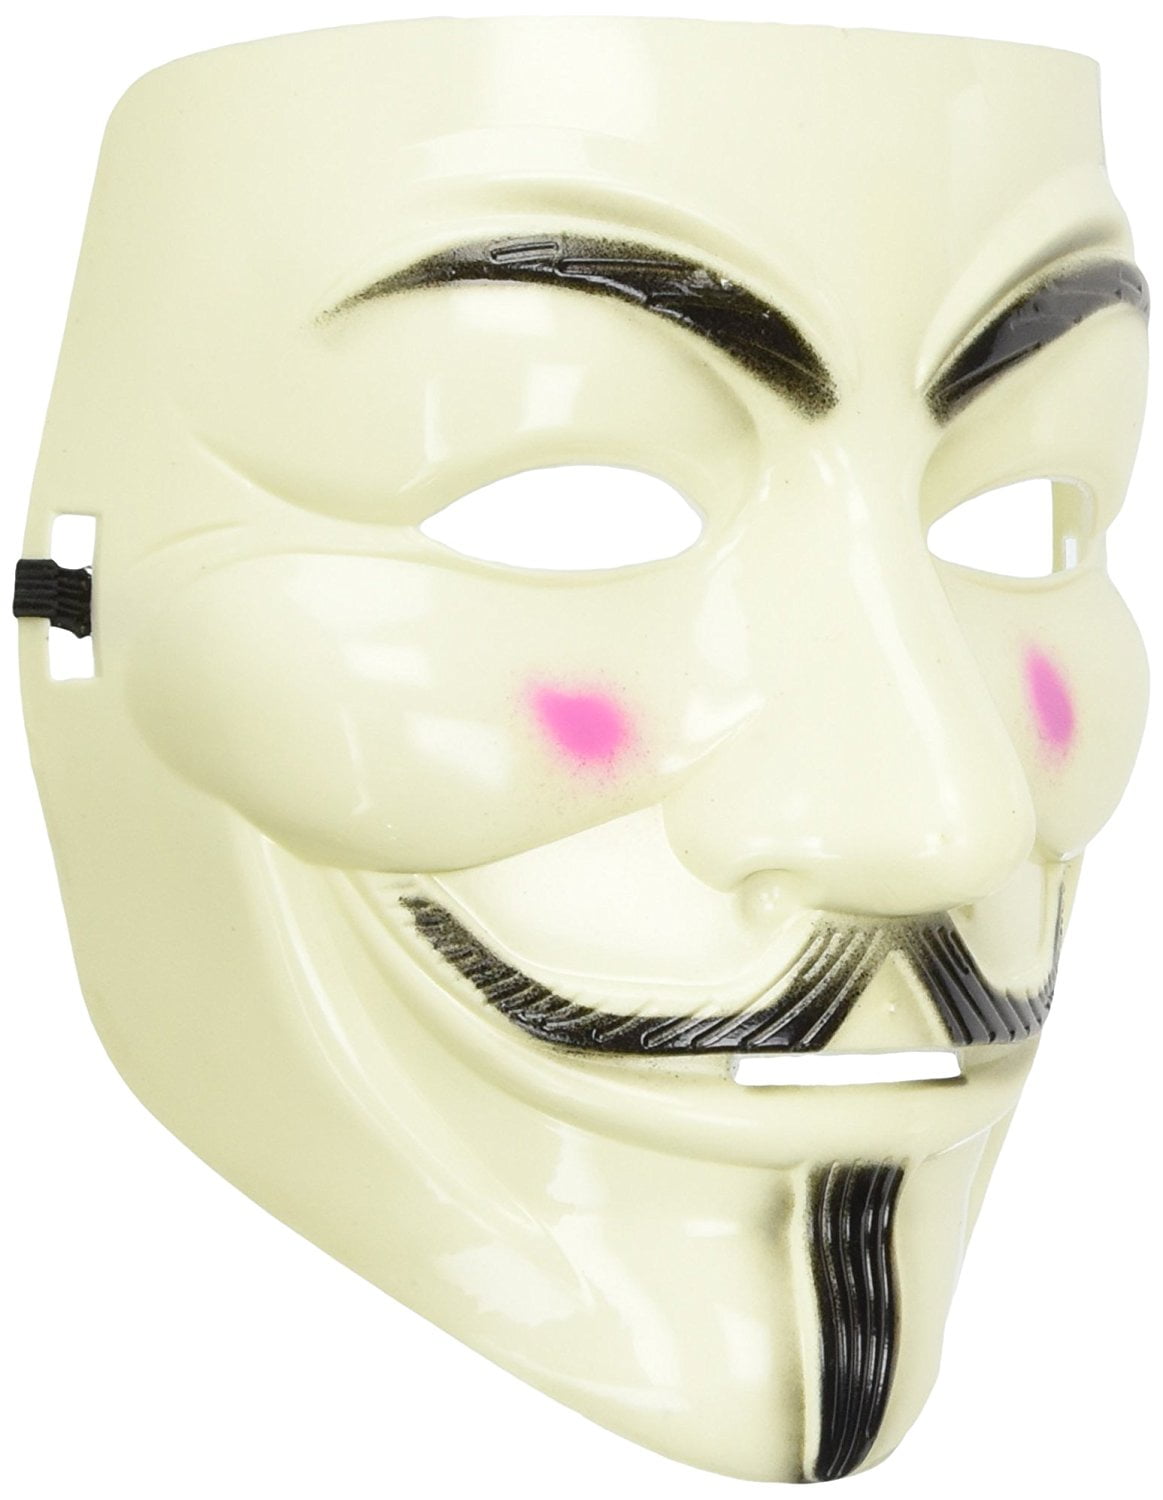 V for Vendetta Mask For Costume Party Halloween Carnival